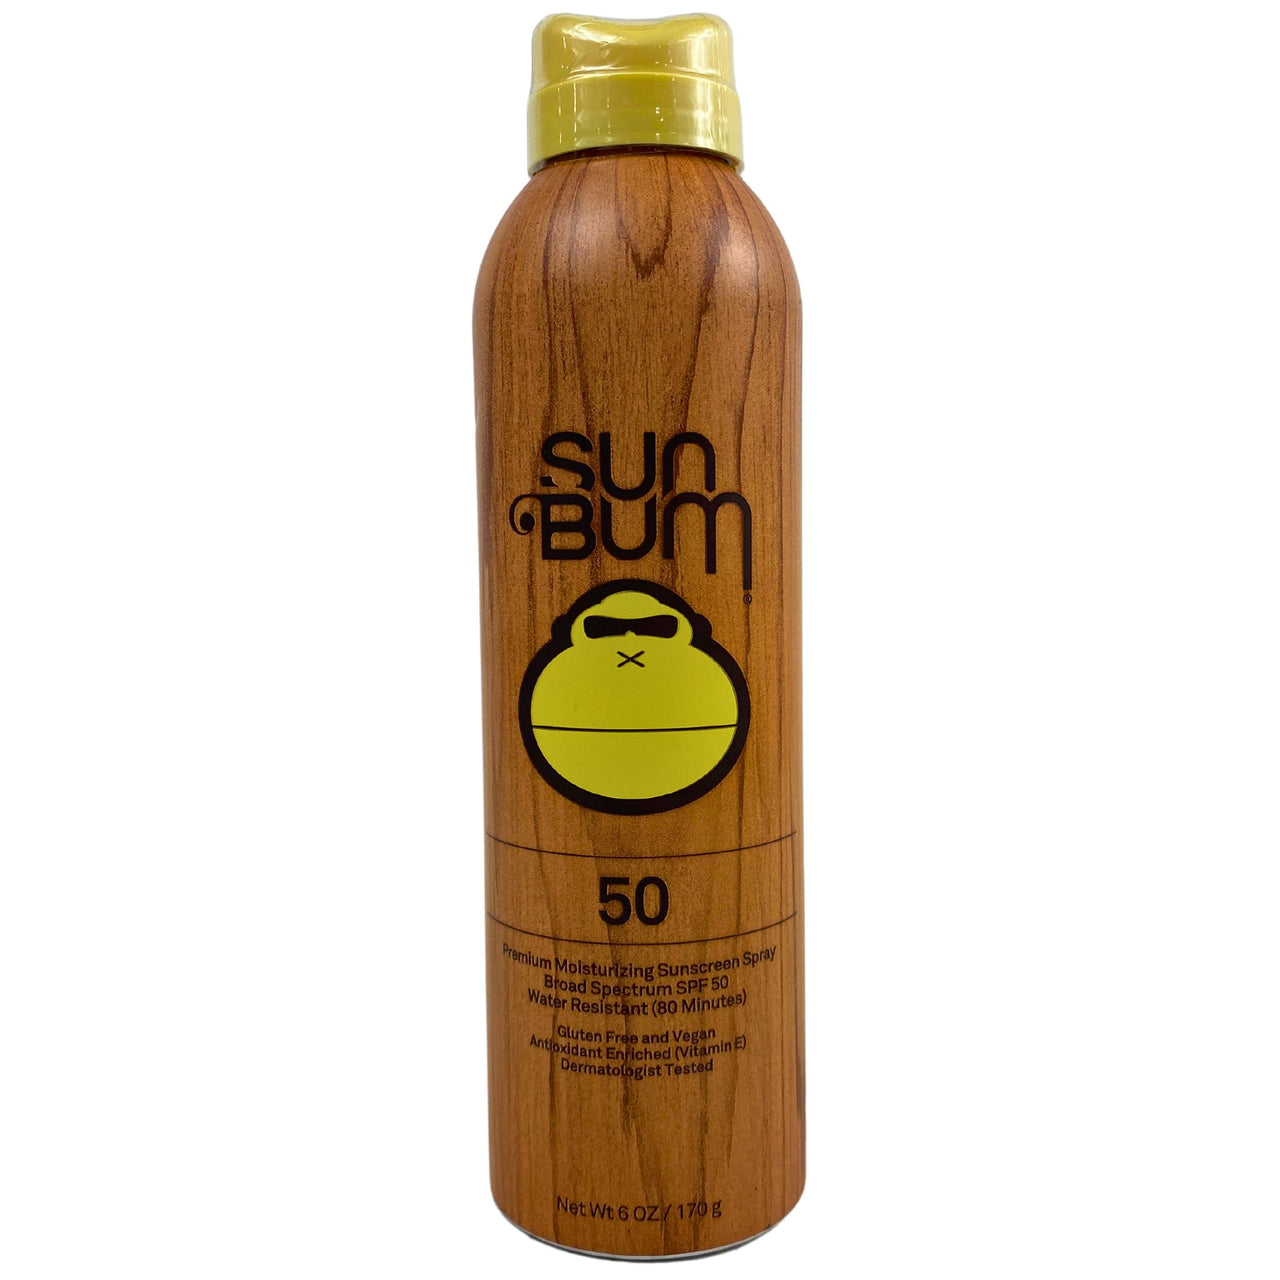 Sun Bum 50 Premium Moistuizing Sunscreen Spray